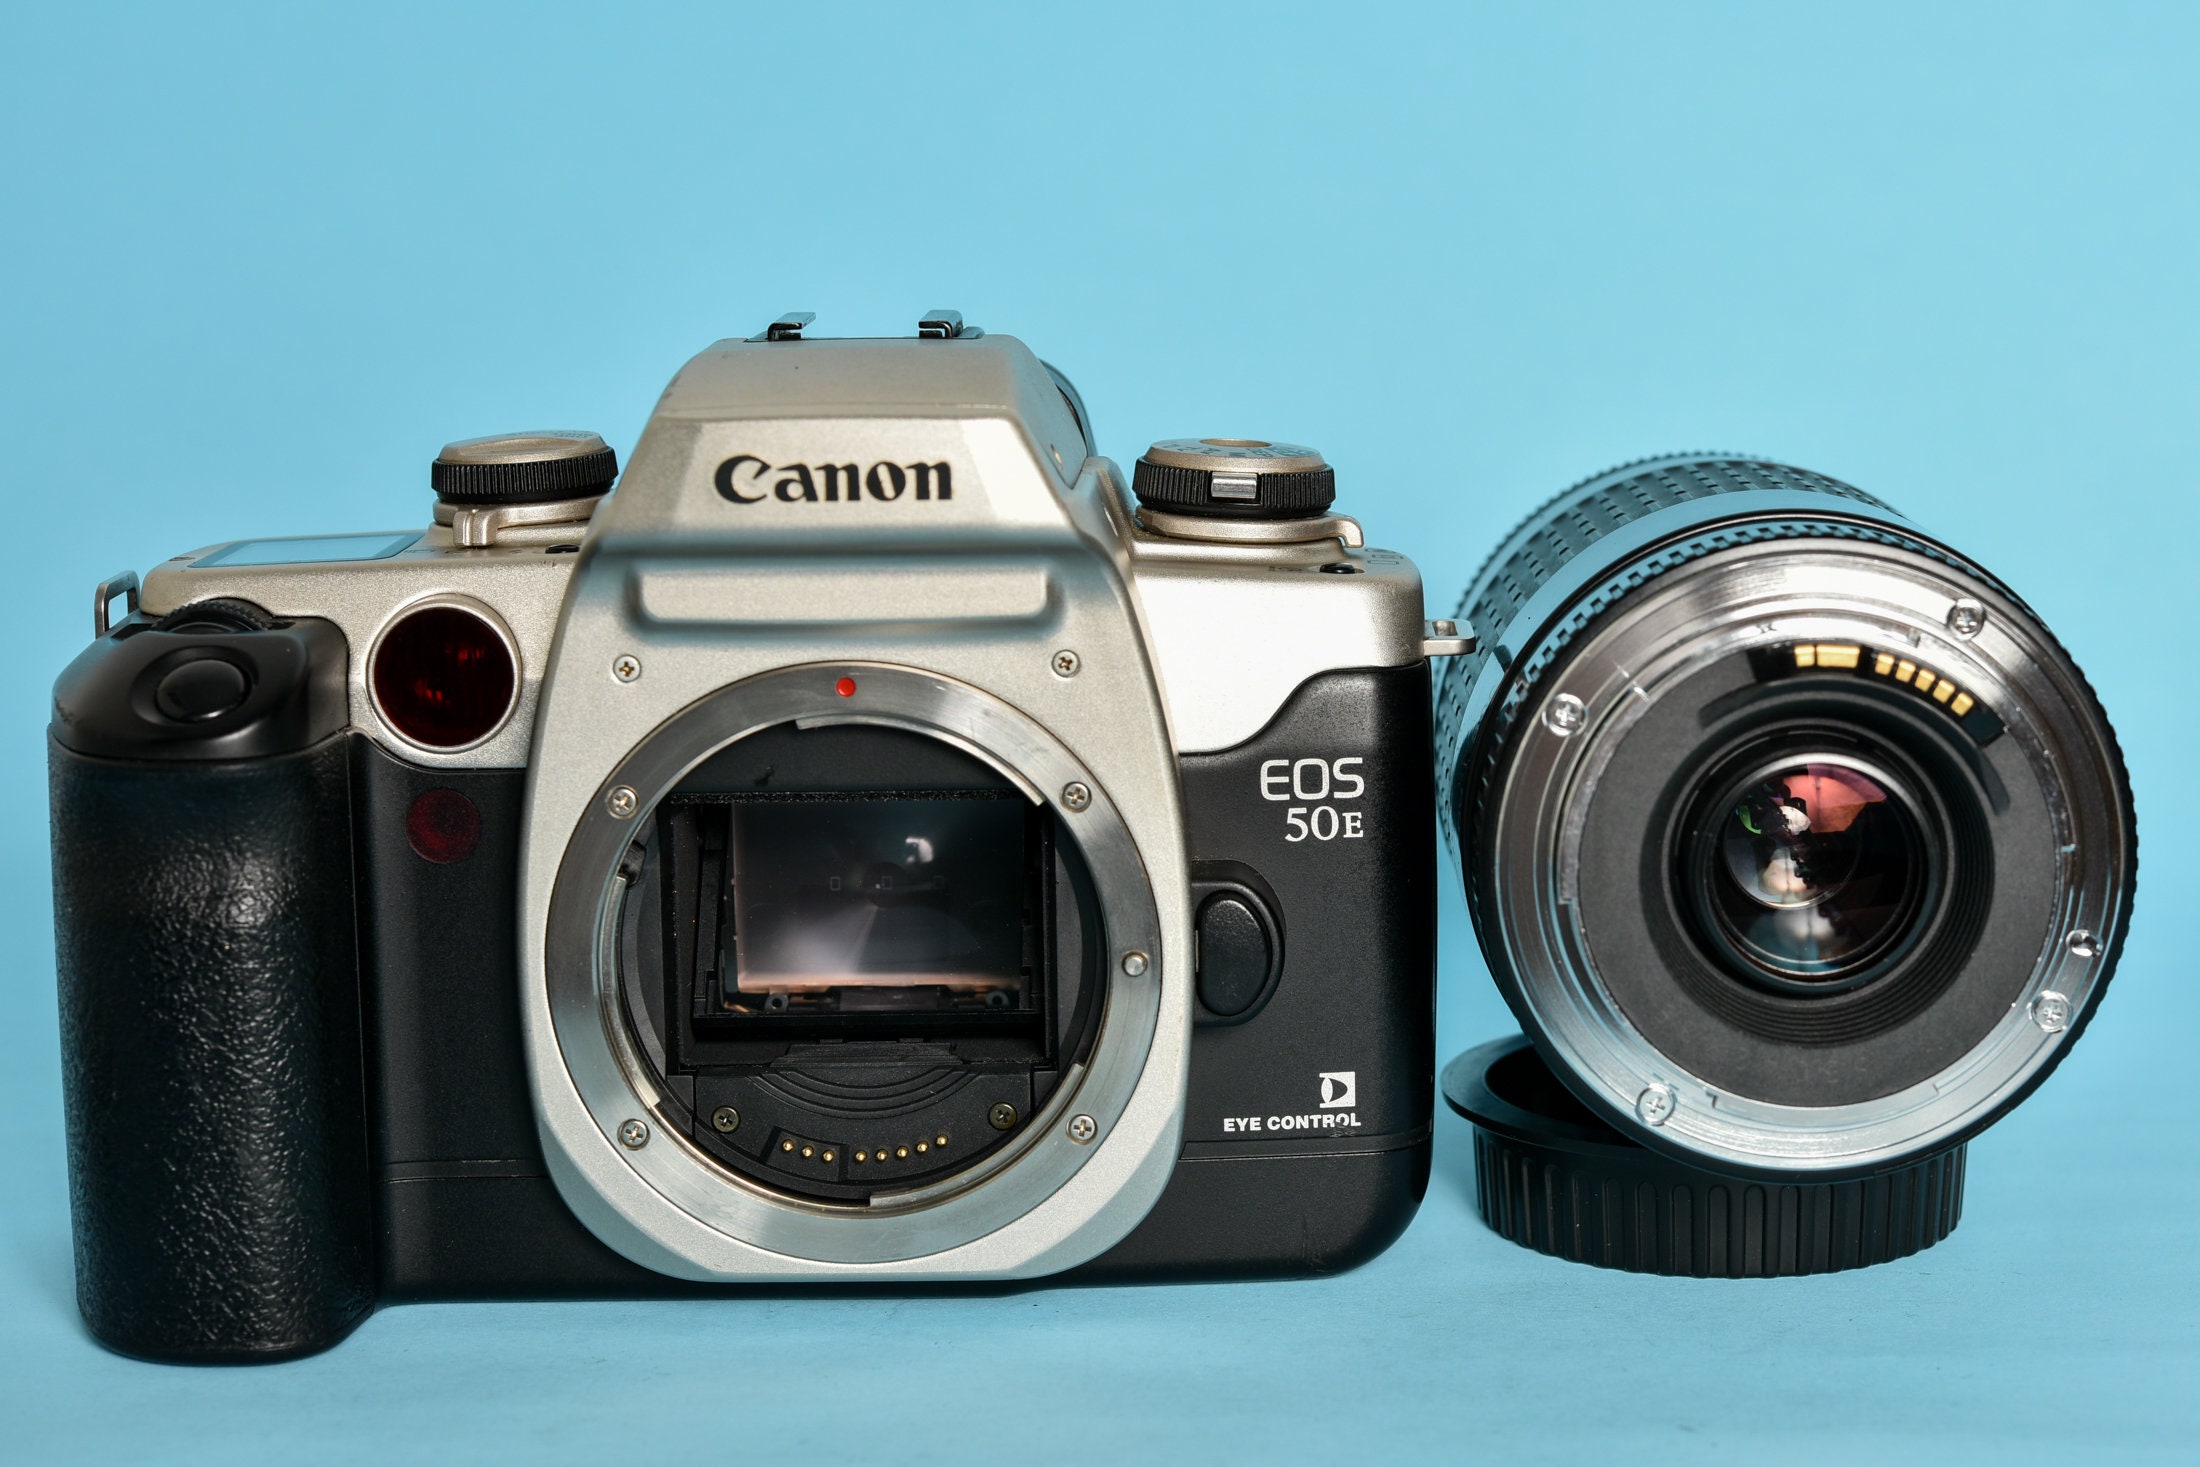 Canon EOS 50 (Cuerpo) - Cámara Analógica Vintage Reflex de 35mm